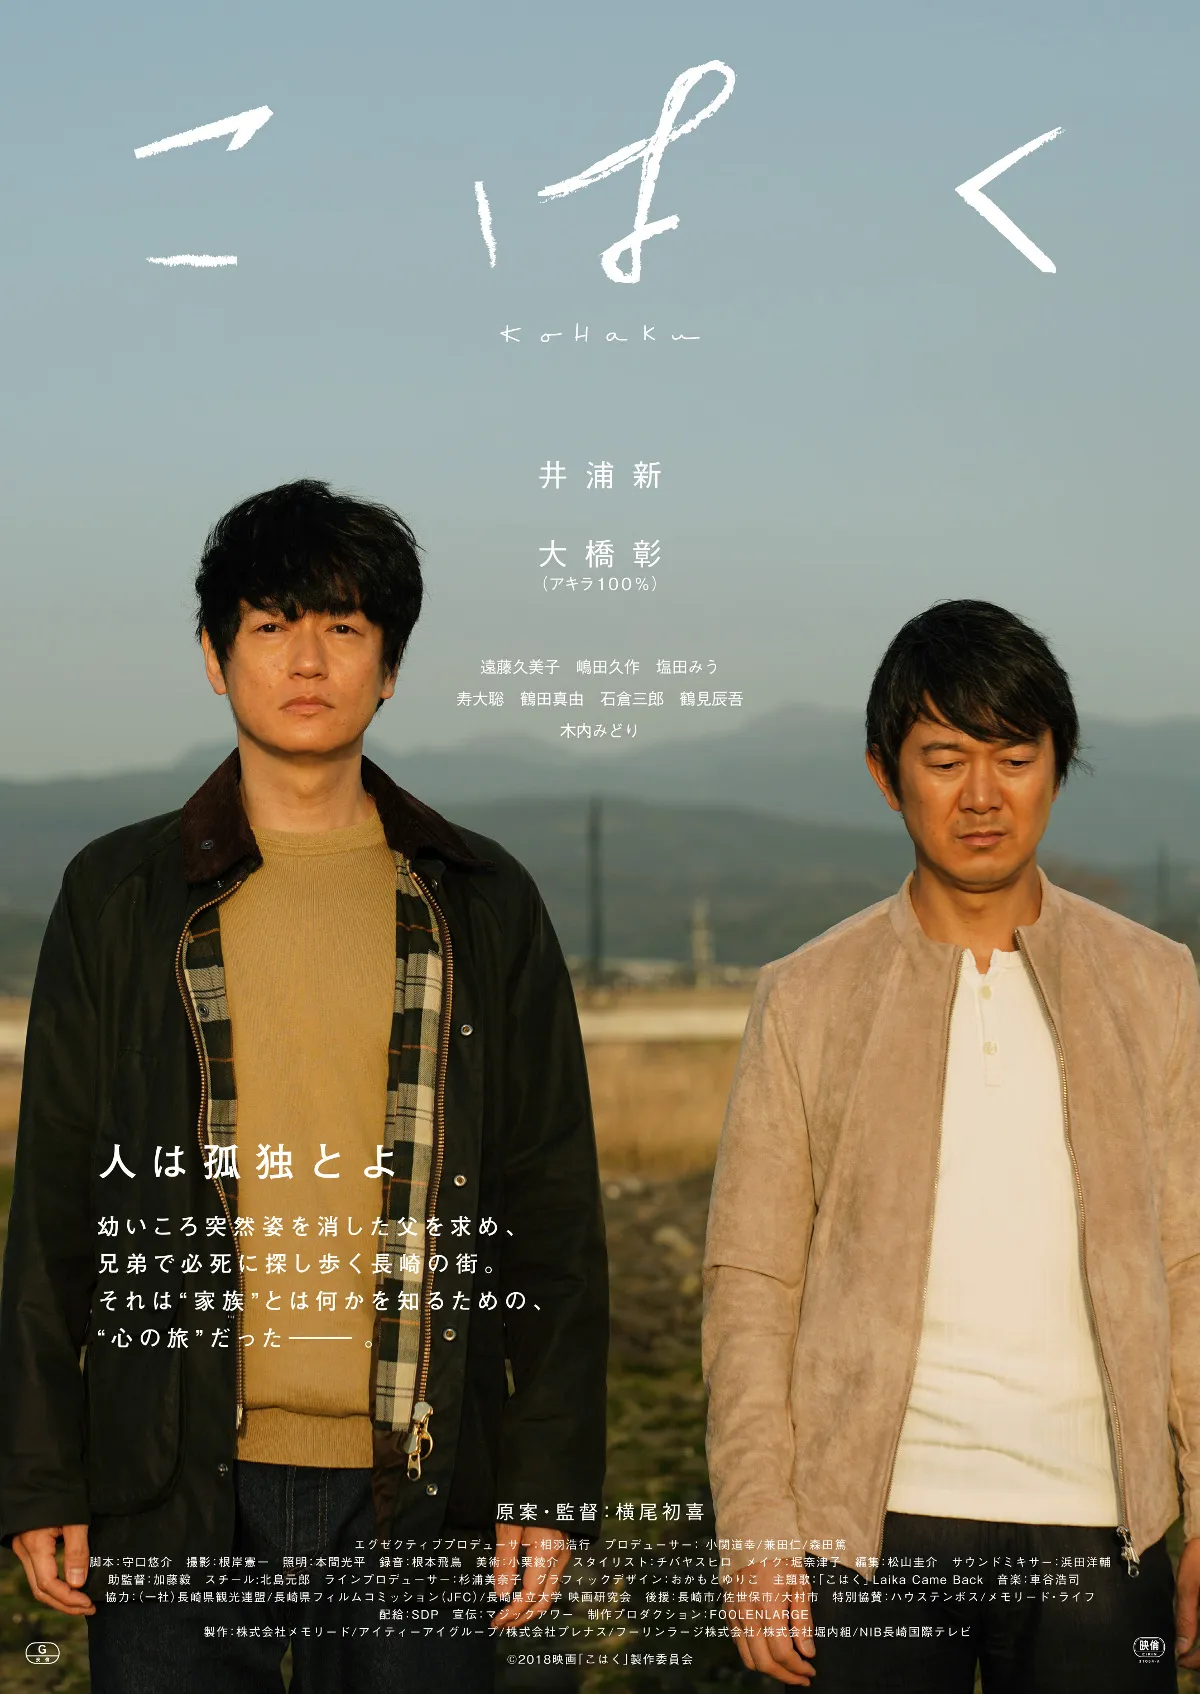 映画「こはく」で初共演を果たす井浦新と大橋彰(アキラ100%)(写真左から)